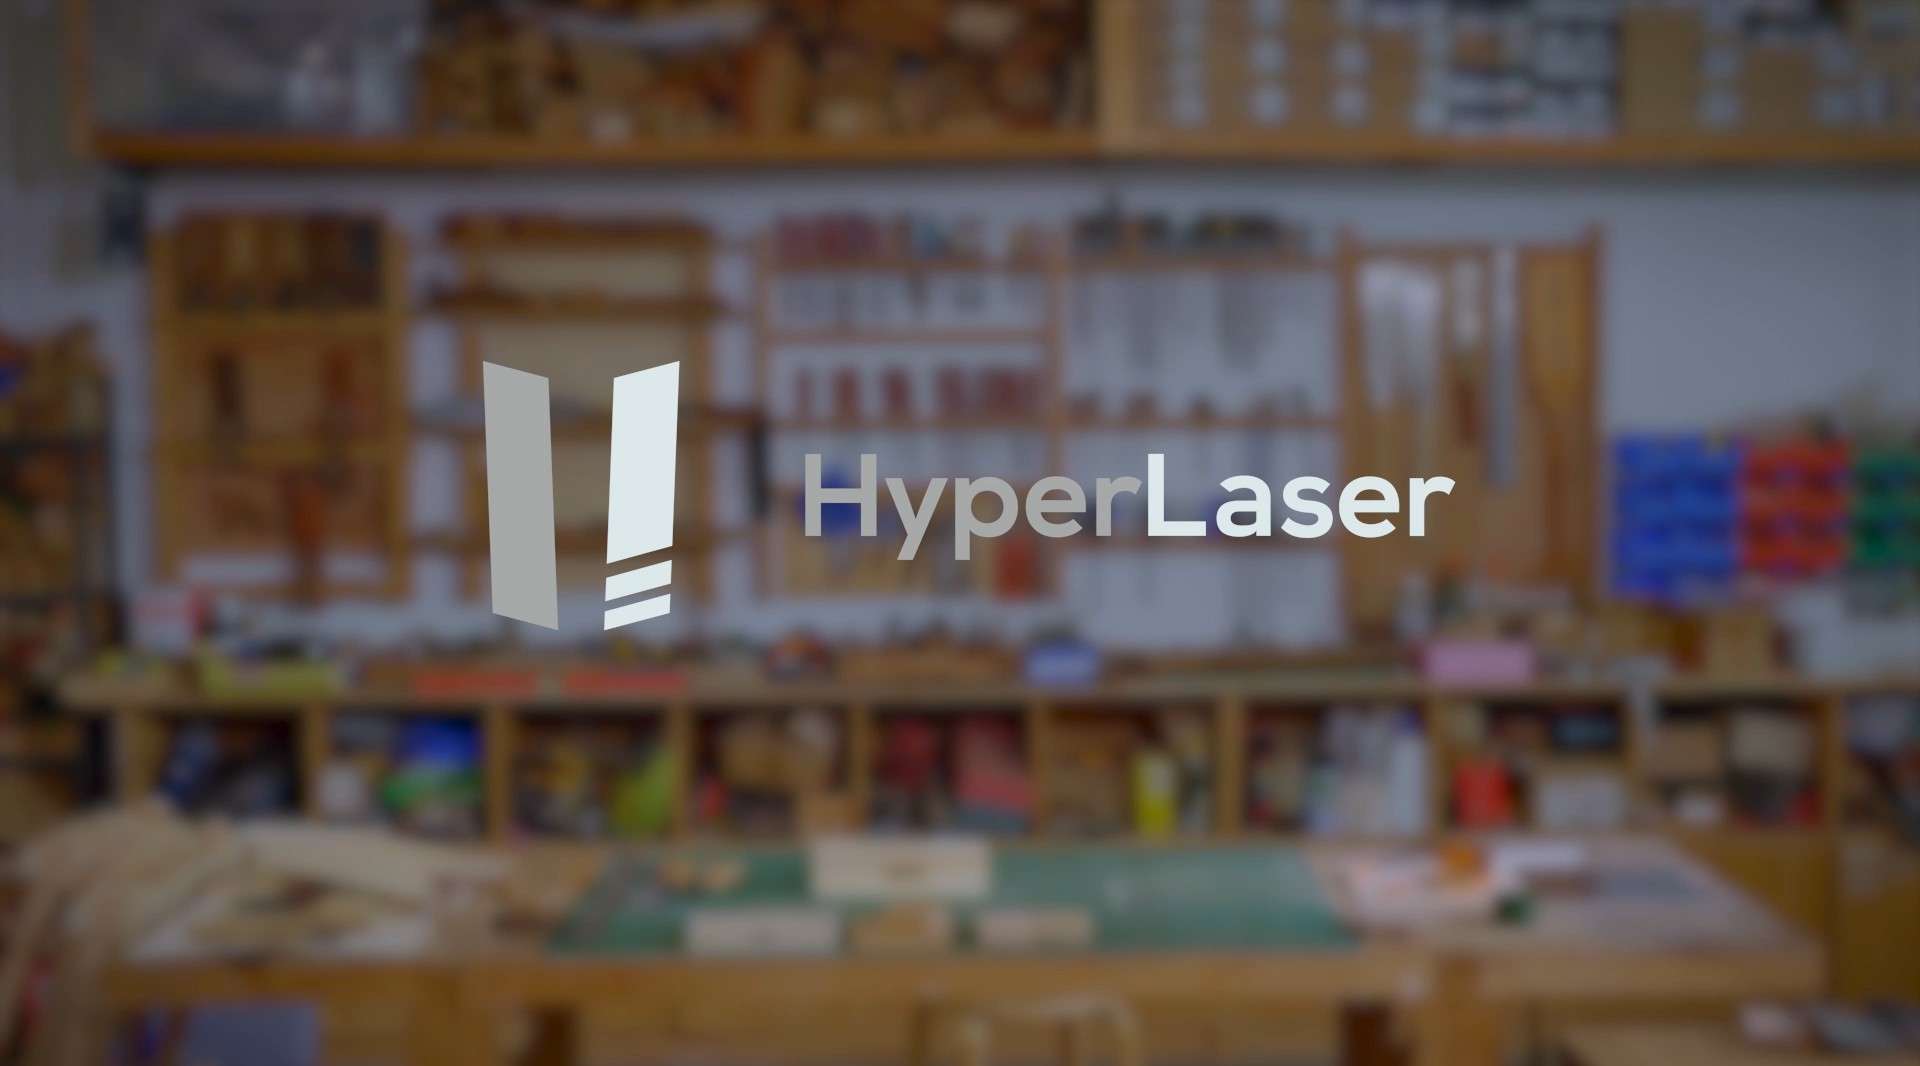 HyperLaser